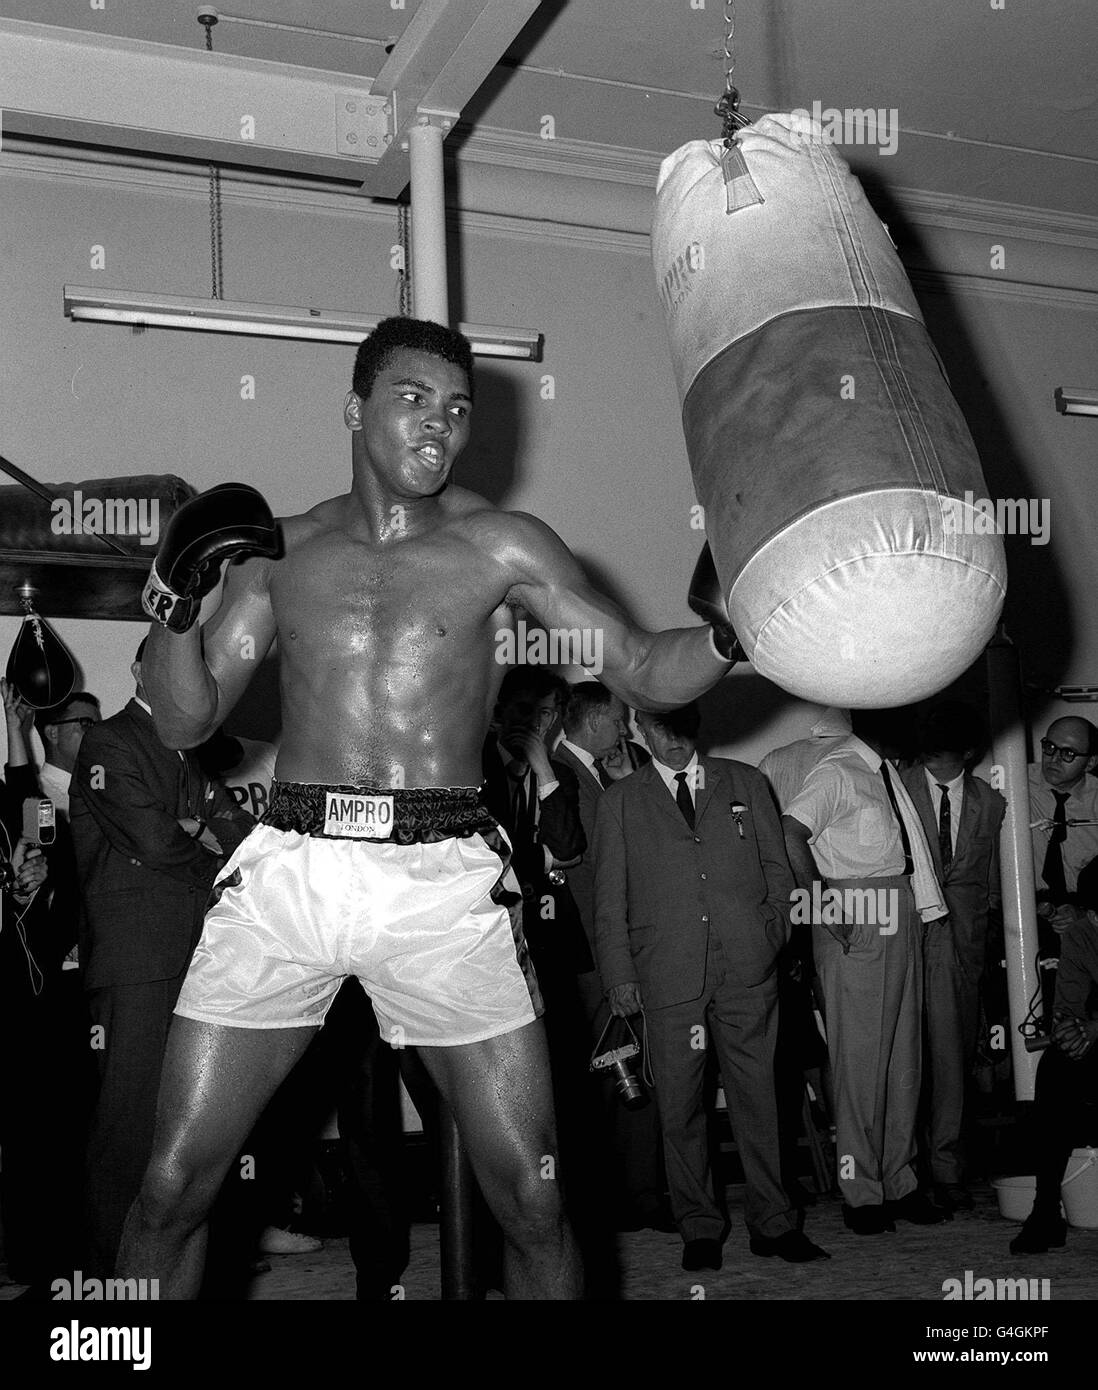 30. OKTOBER : an diesem Tag im Jahr 1974 schlägt Muhammad Ali George  Foreman im berühmtesten Boxwettbewerb aller Zeiten "The Rumble in the  Jungle" in Zaire. SCHWERGEWICHTSWELTMEISTER MUHAMMAD ALI (CASSIUS CLAY) AUF